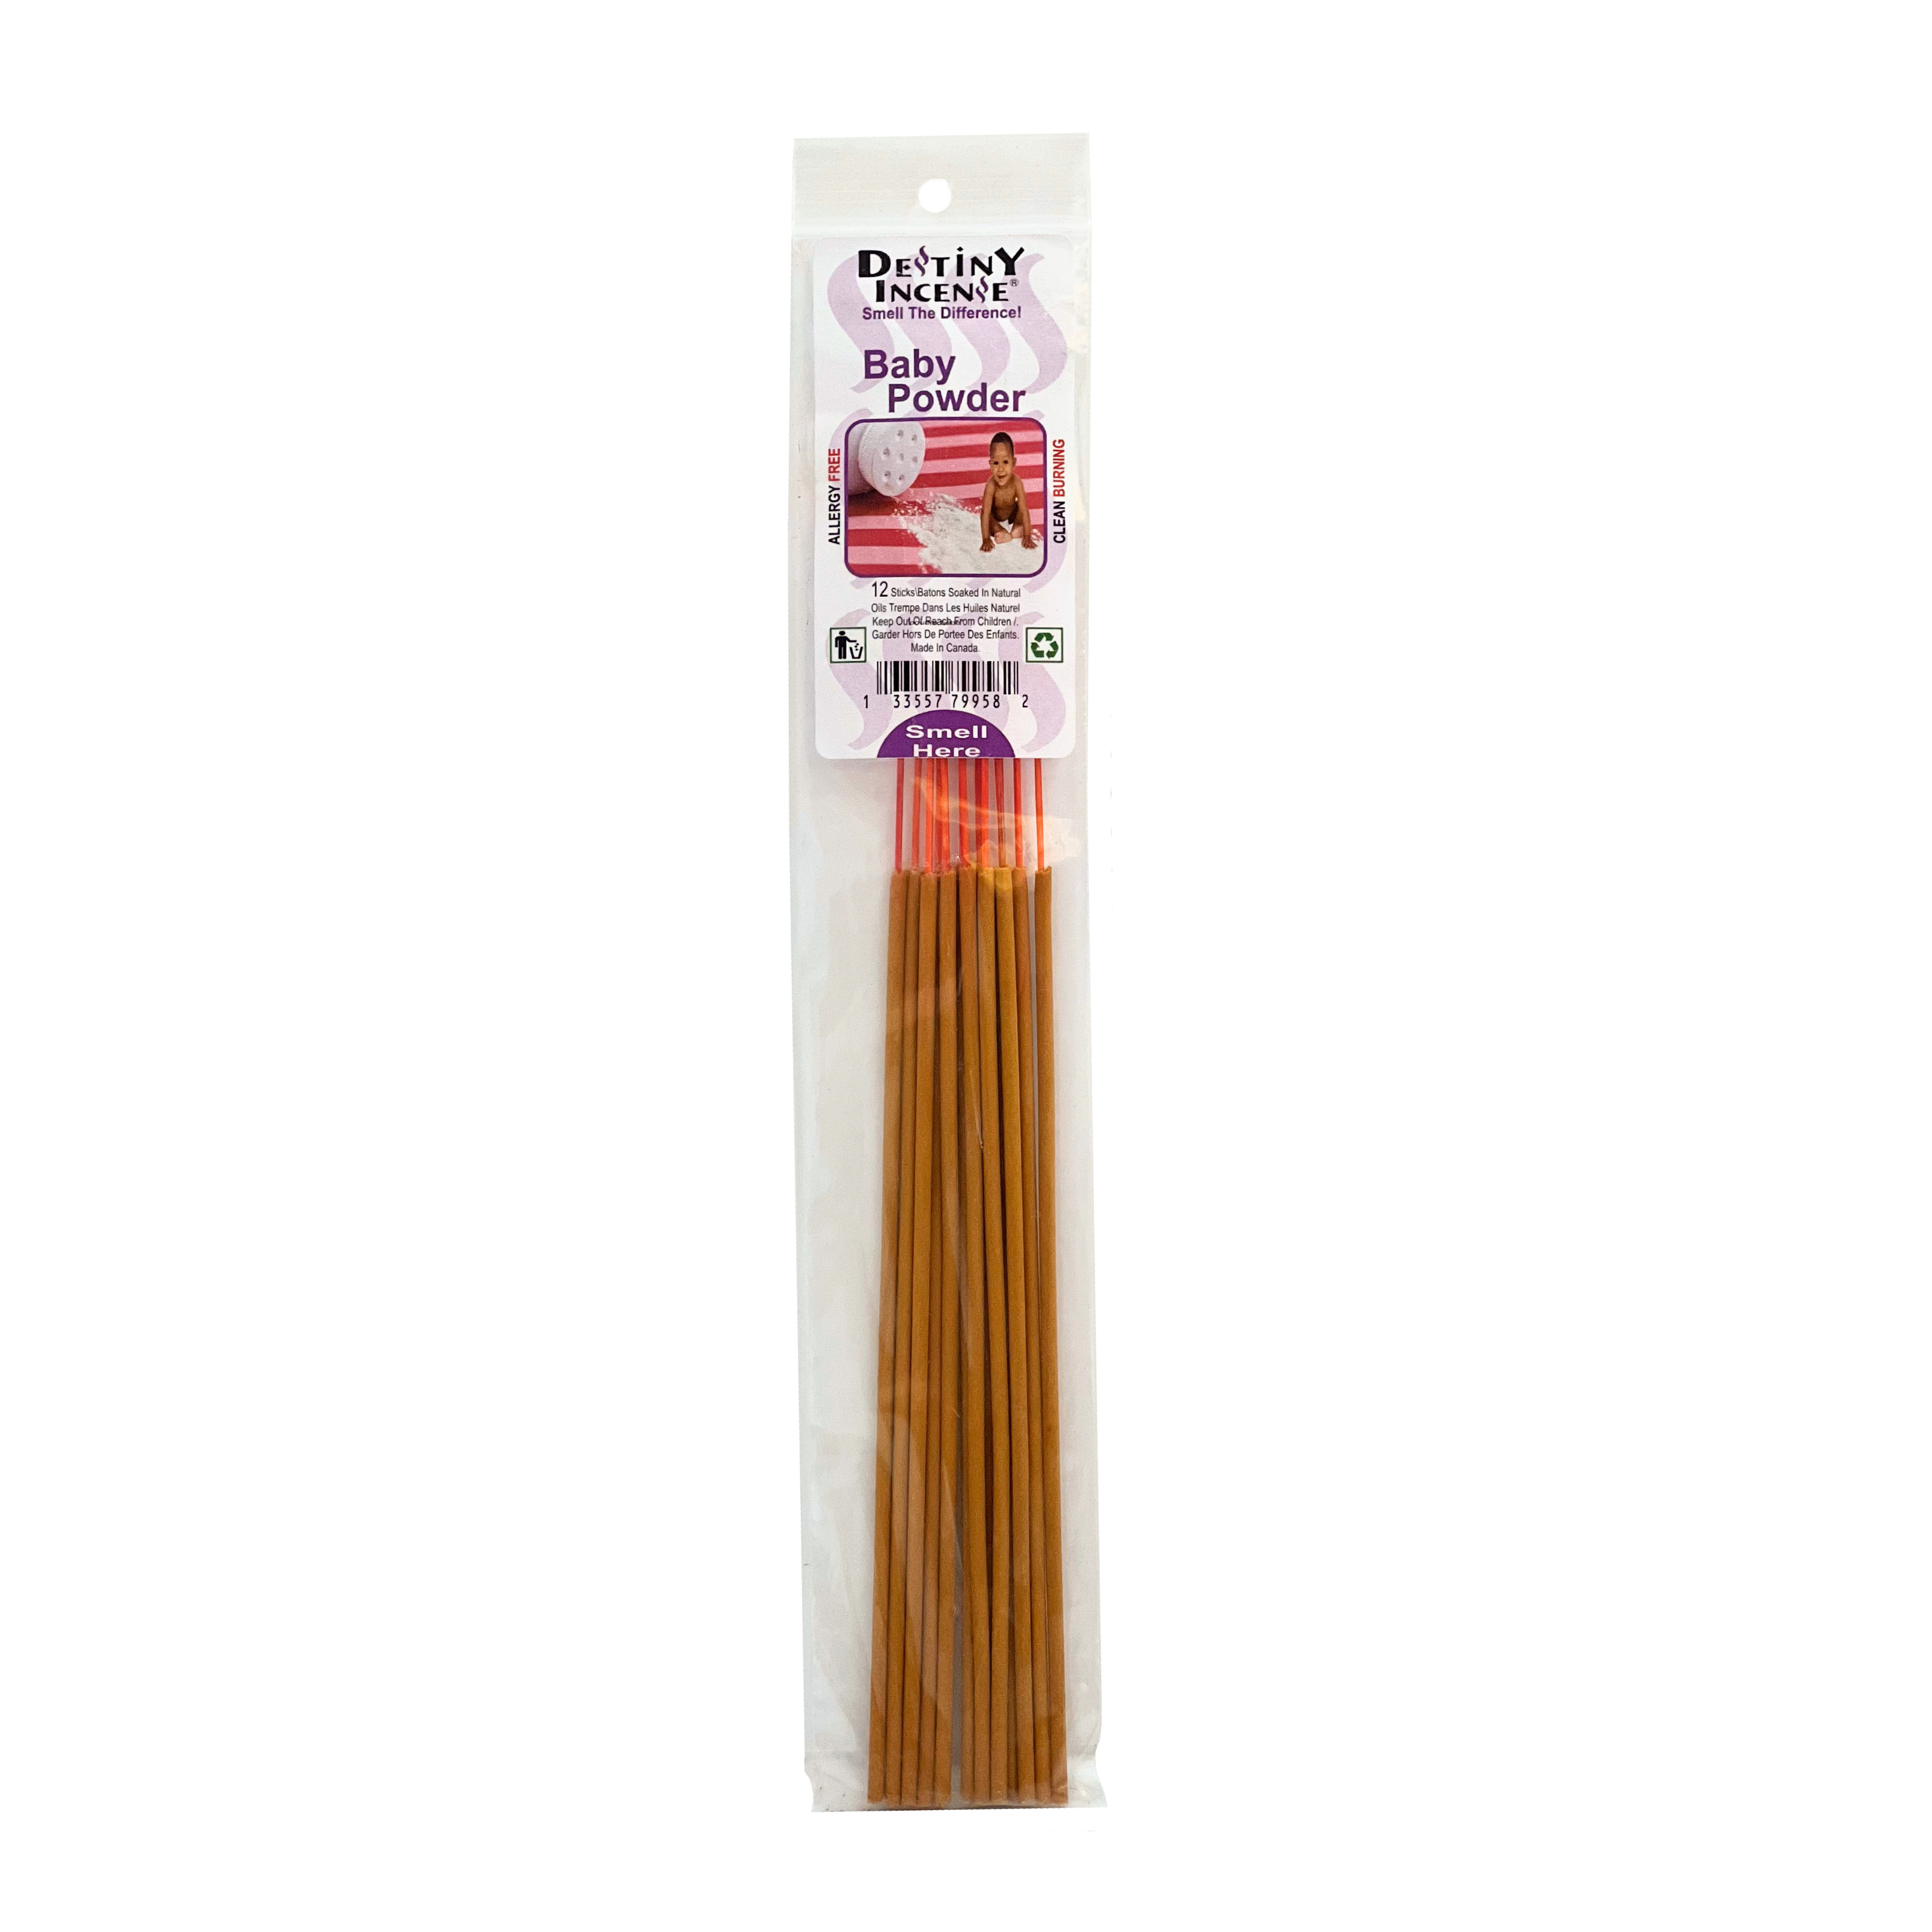 Destiny incense baby powder 12 Sticks